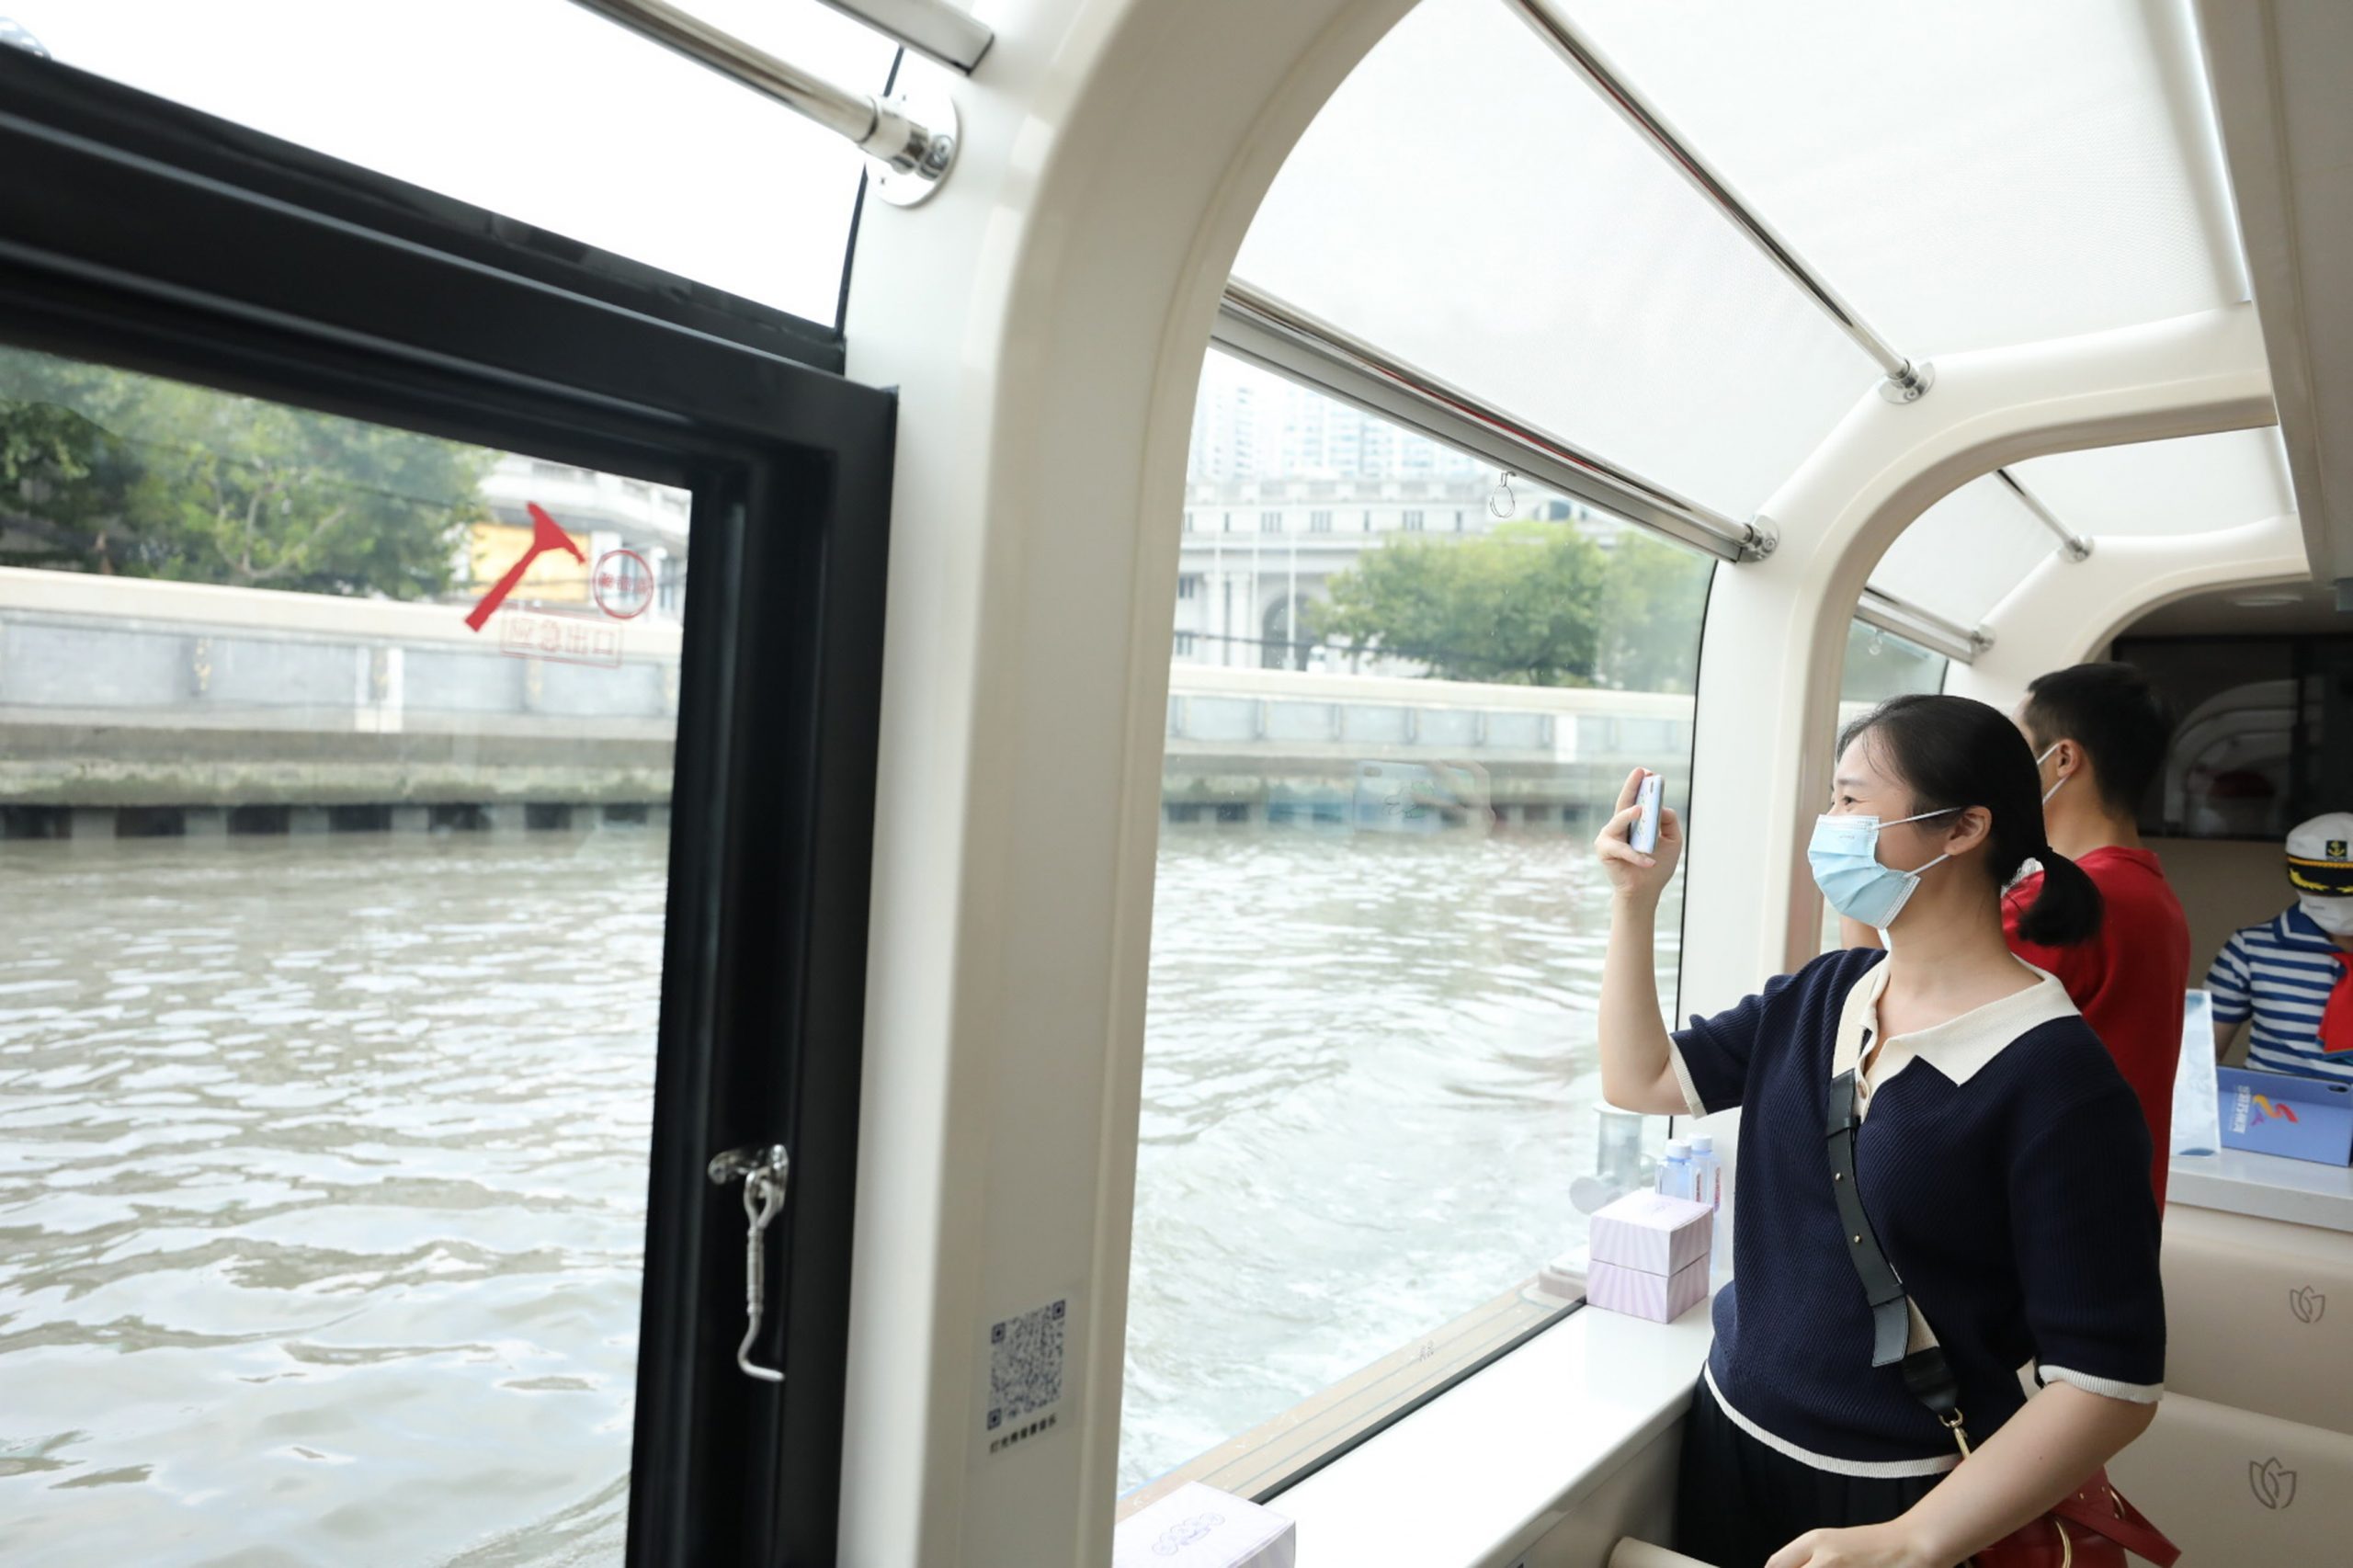 上海旅游节如约而至 苏州河旅游水上航线开通试航